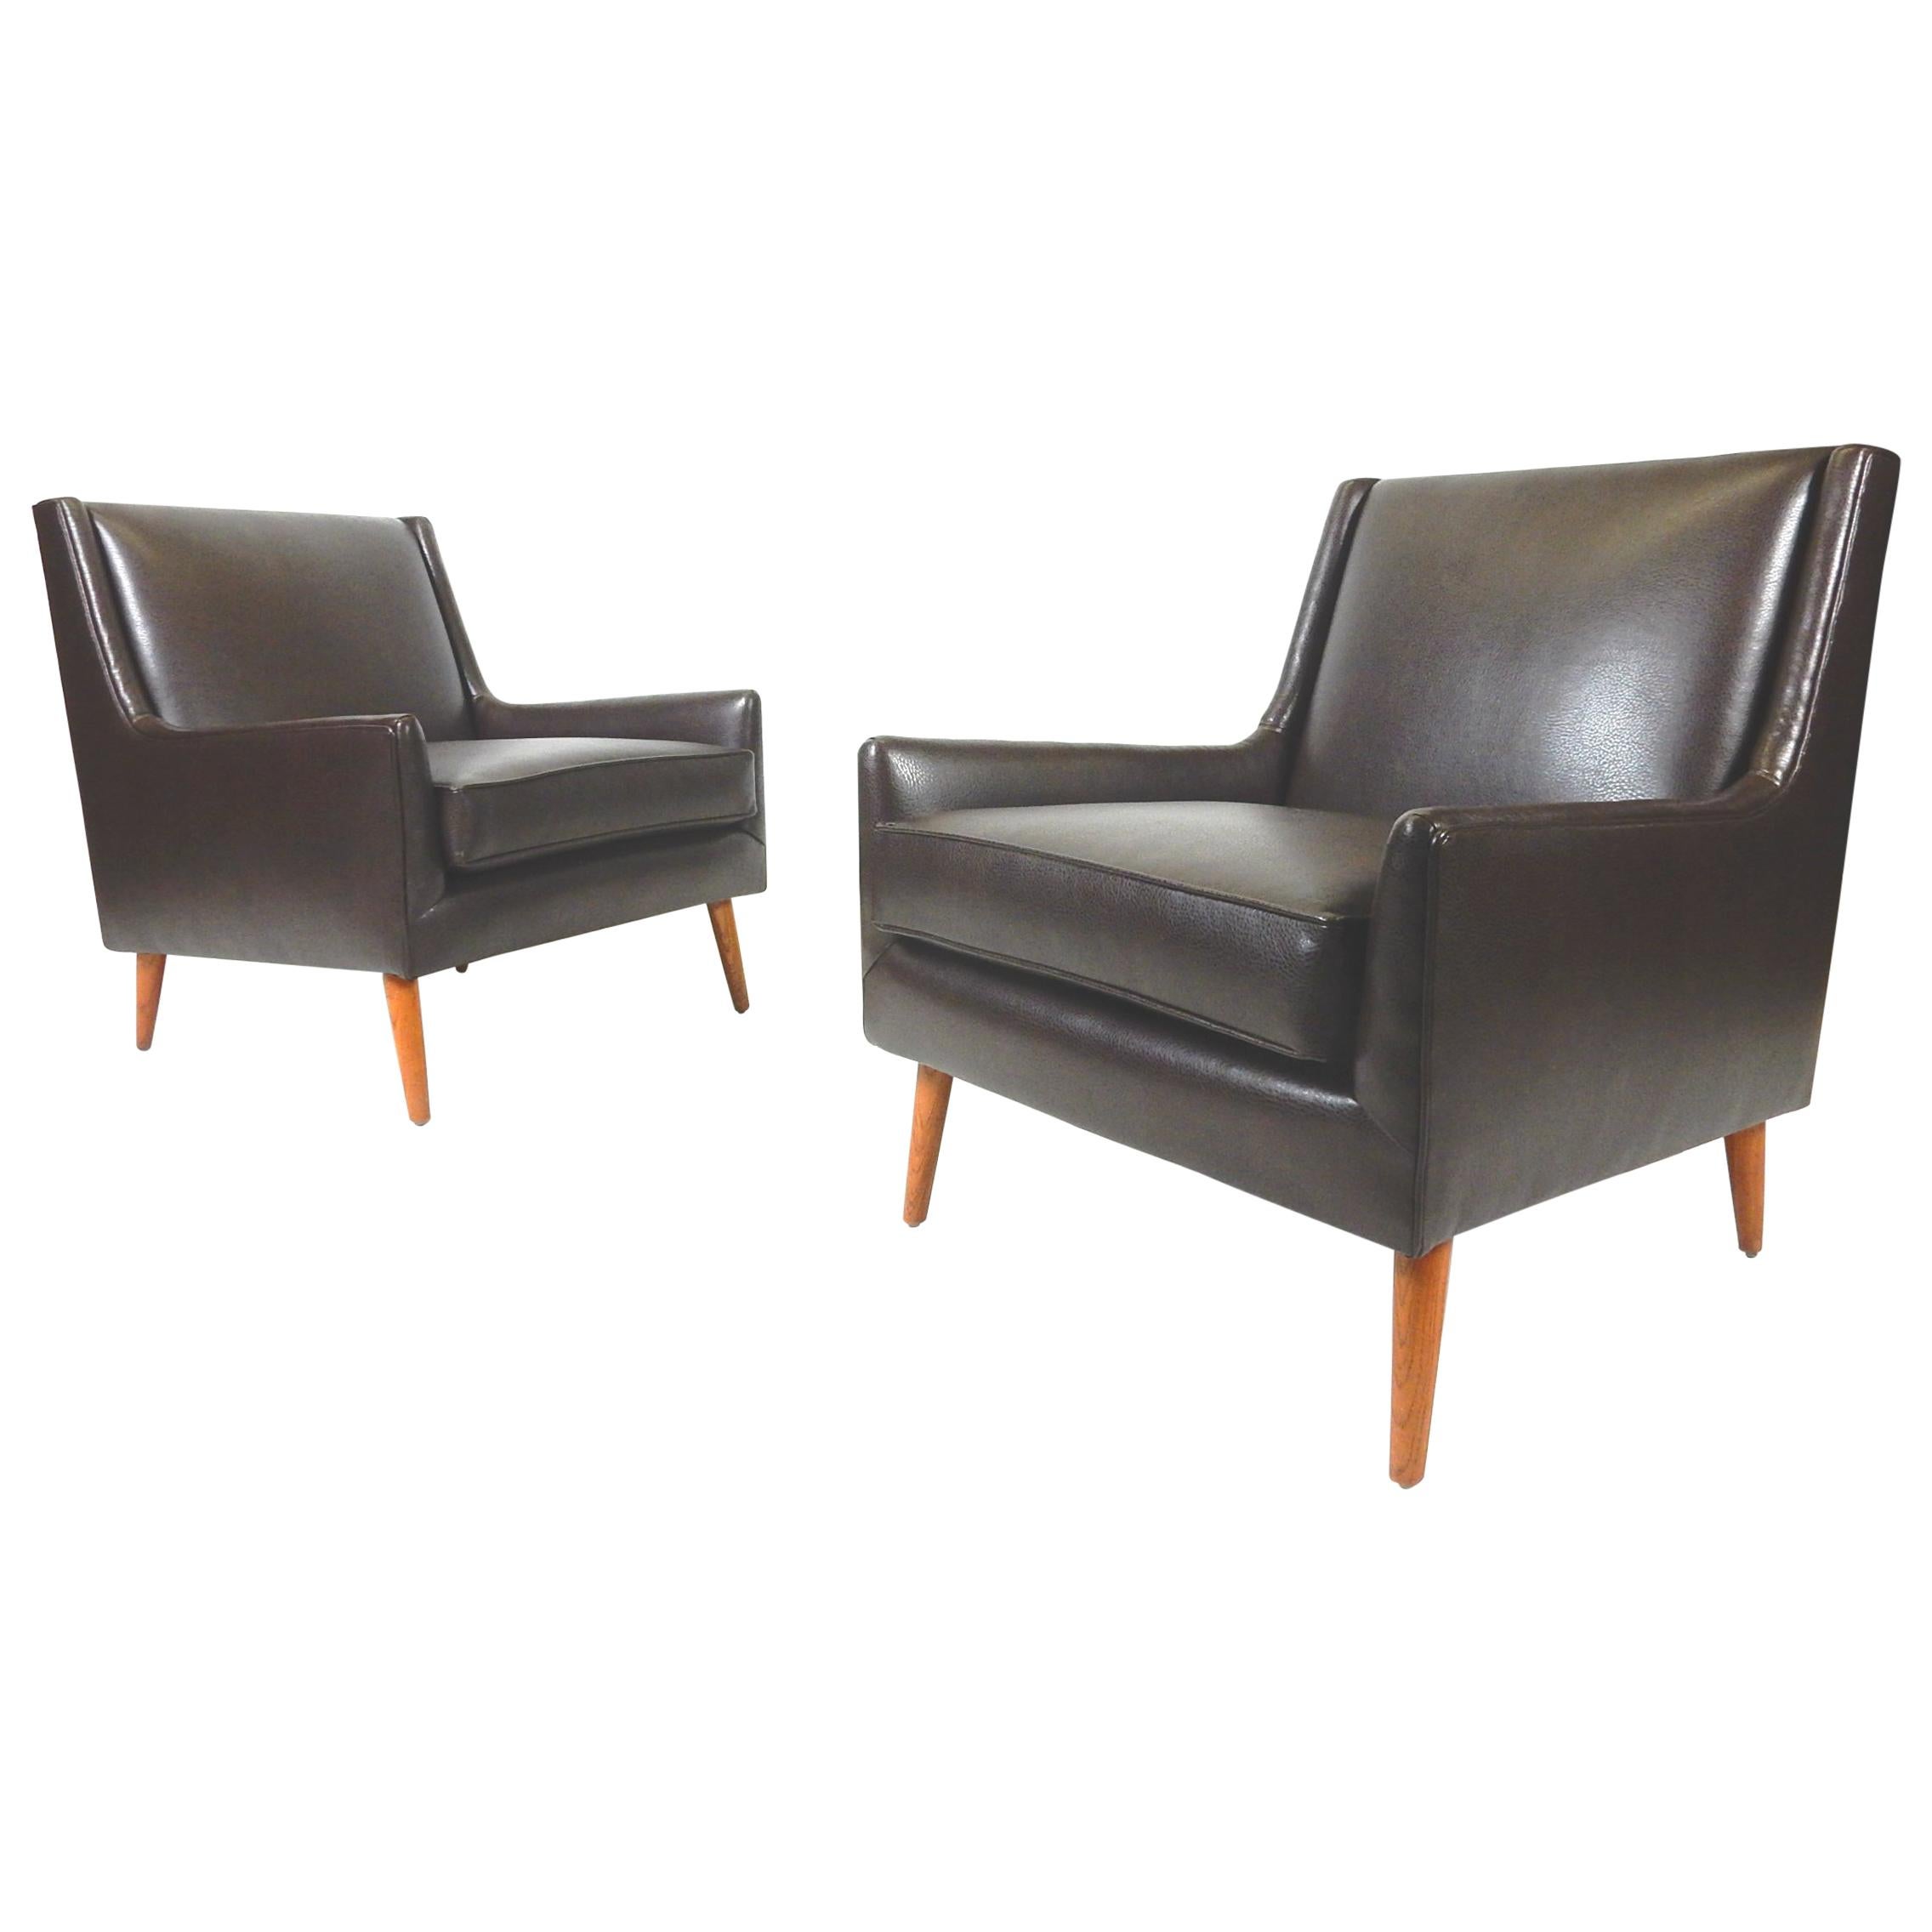 Unglaubliche Paar 1950er Mid-Century Modern Lounge Stühle, die neu gepolstert sind in
Feines butterweiches schokoladenbraunes Kunstleder.
Sie sind im Stil von Edward Wormley gehalten. Nicht markiert oder signiert.
Die Stühle sind von